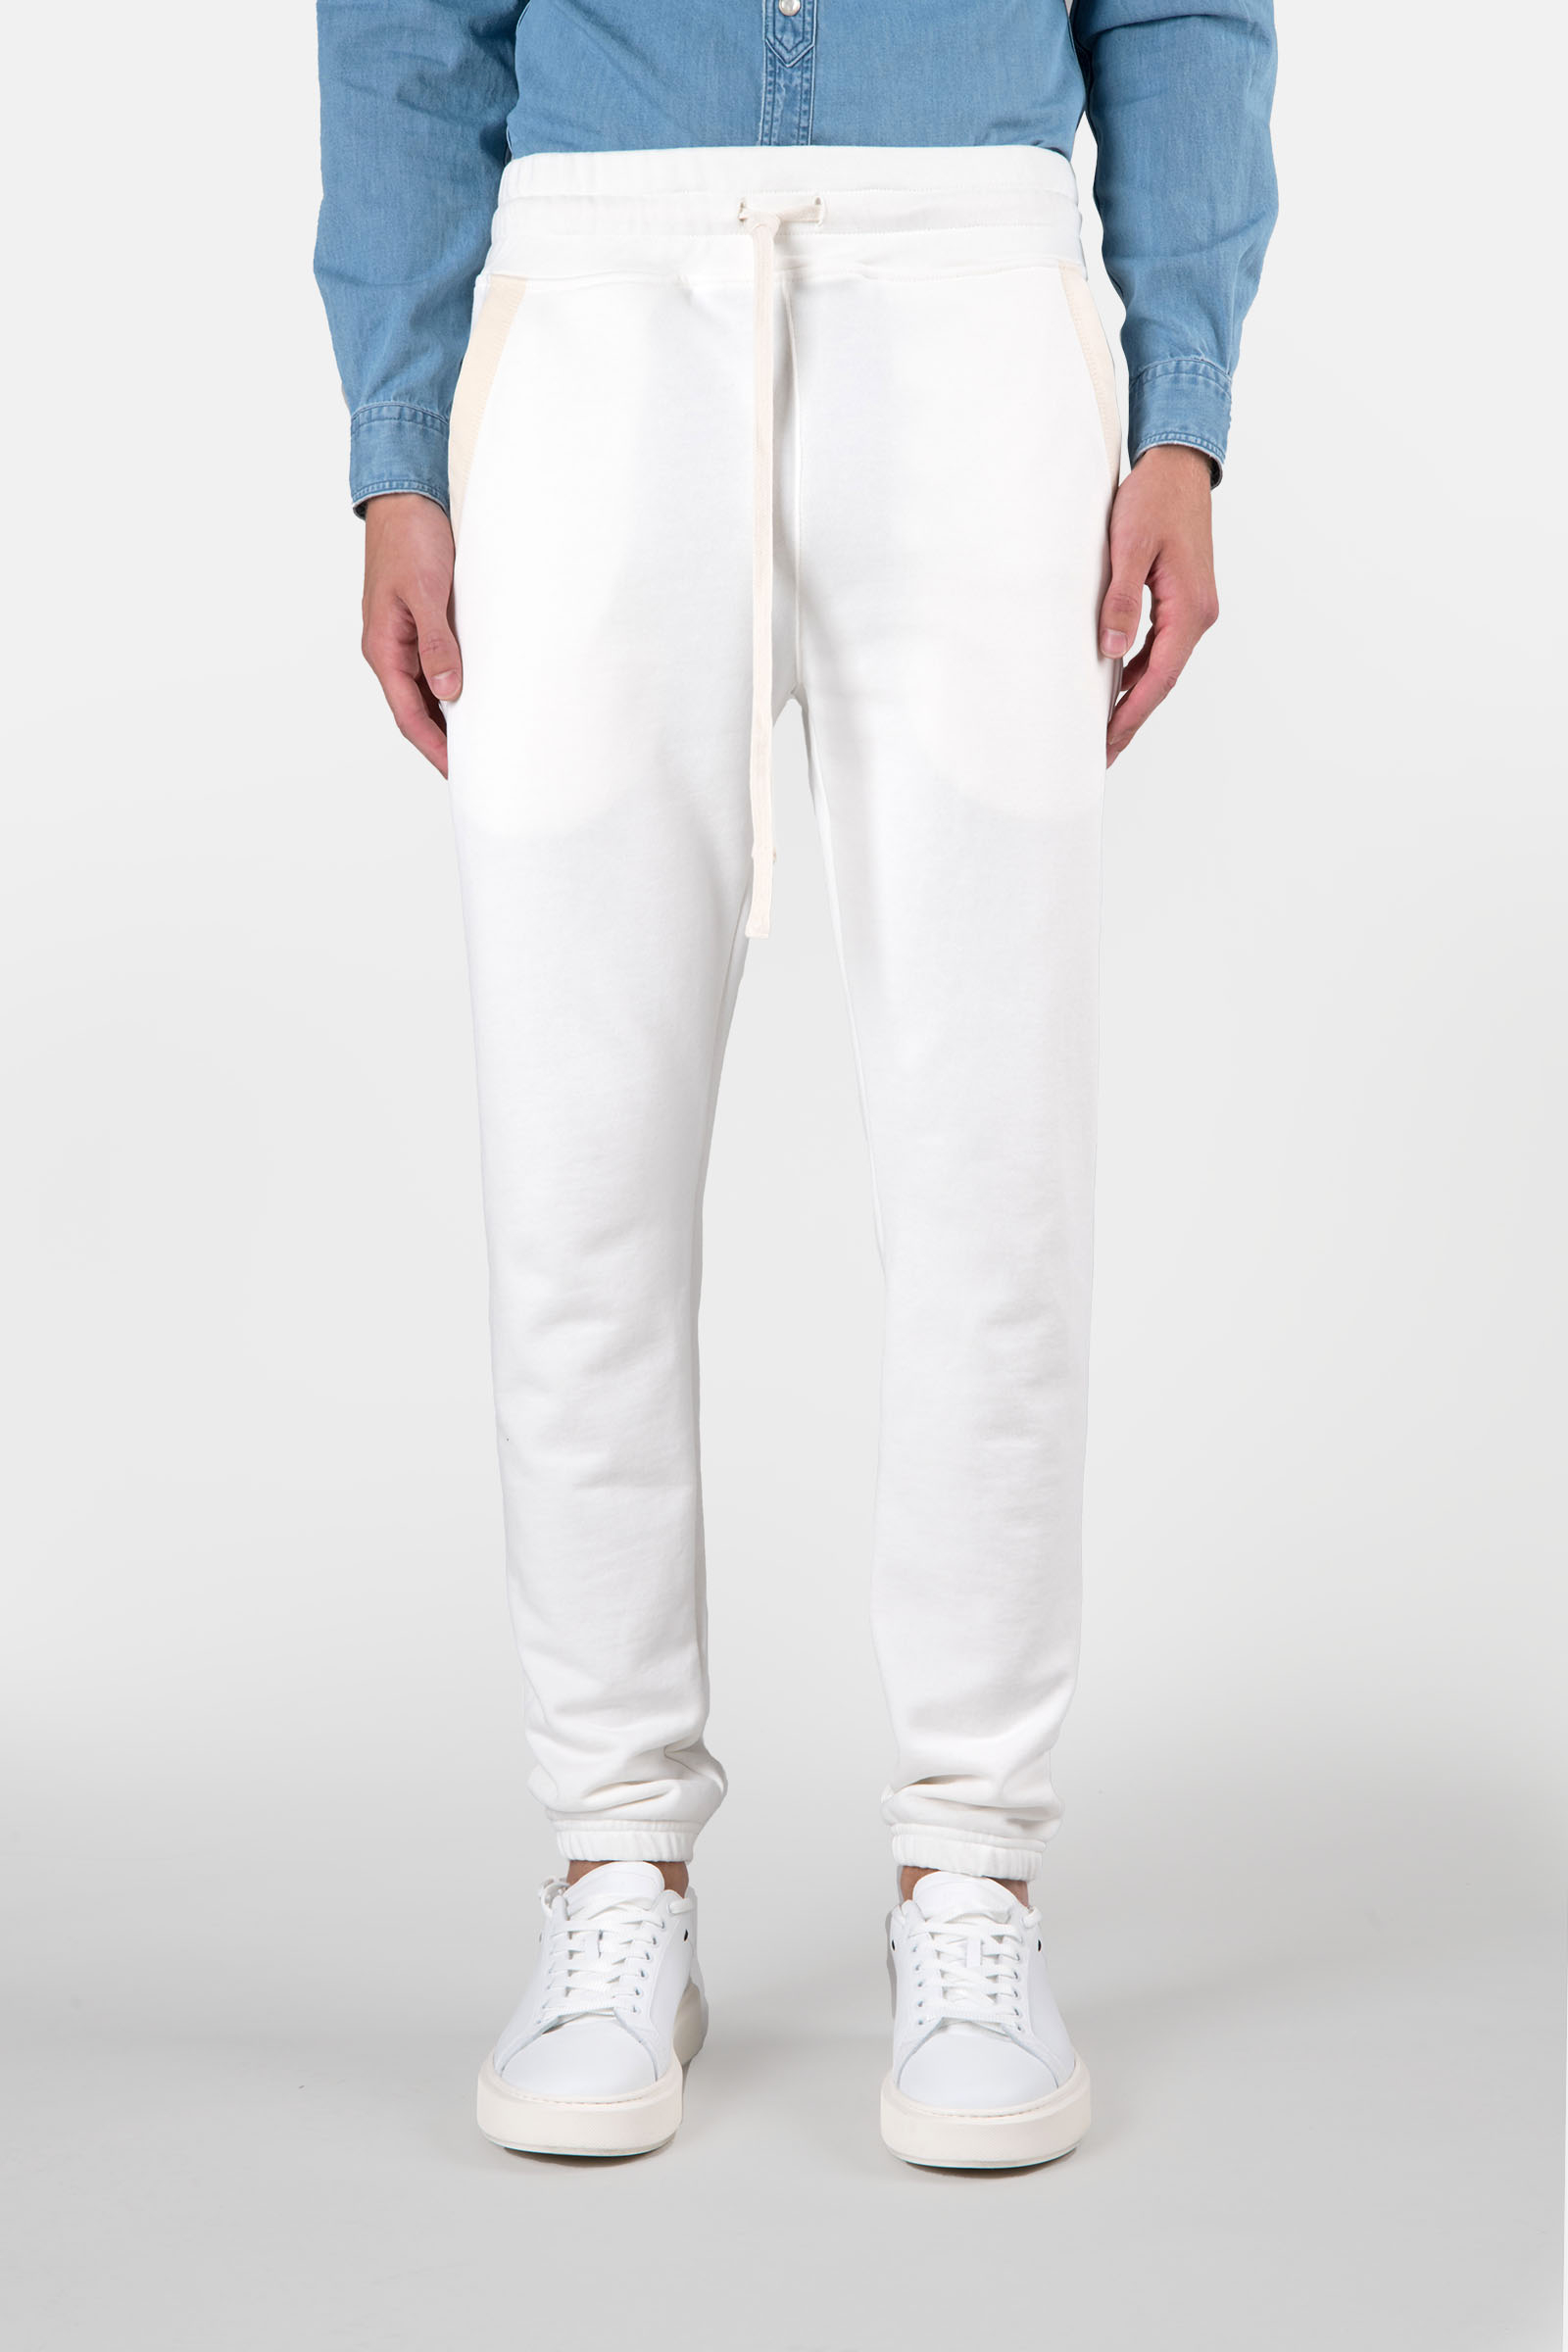 TRACK PANTS - WHITE - Hydrogen - Luxury Sportwear